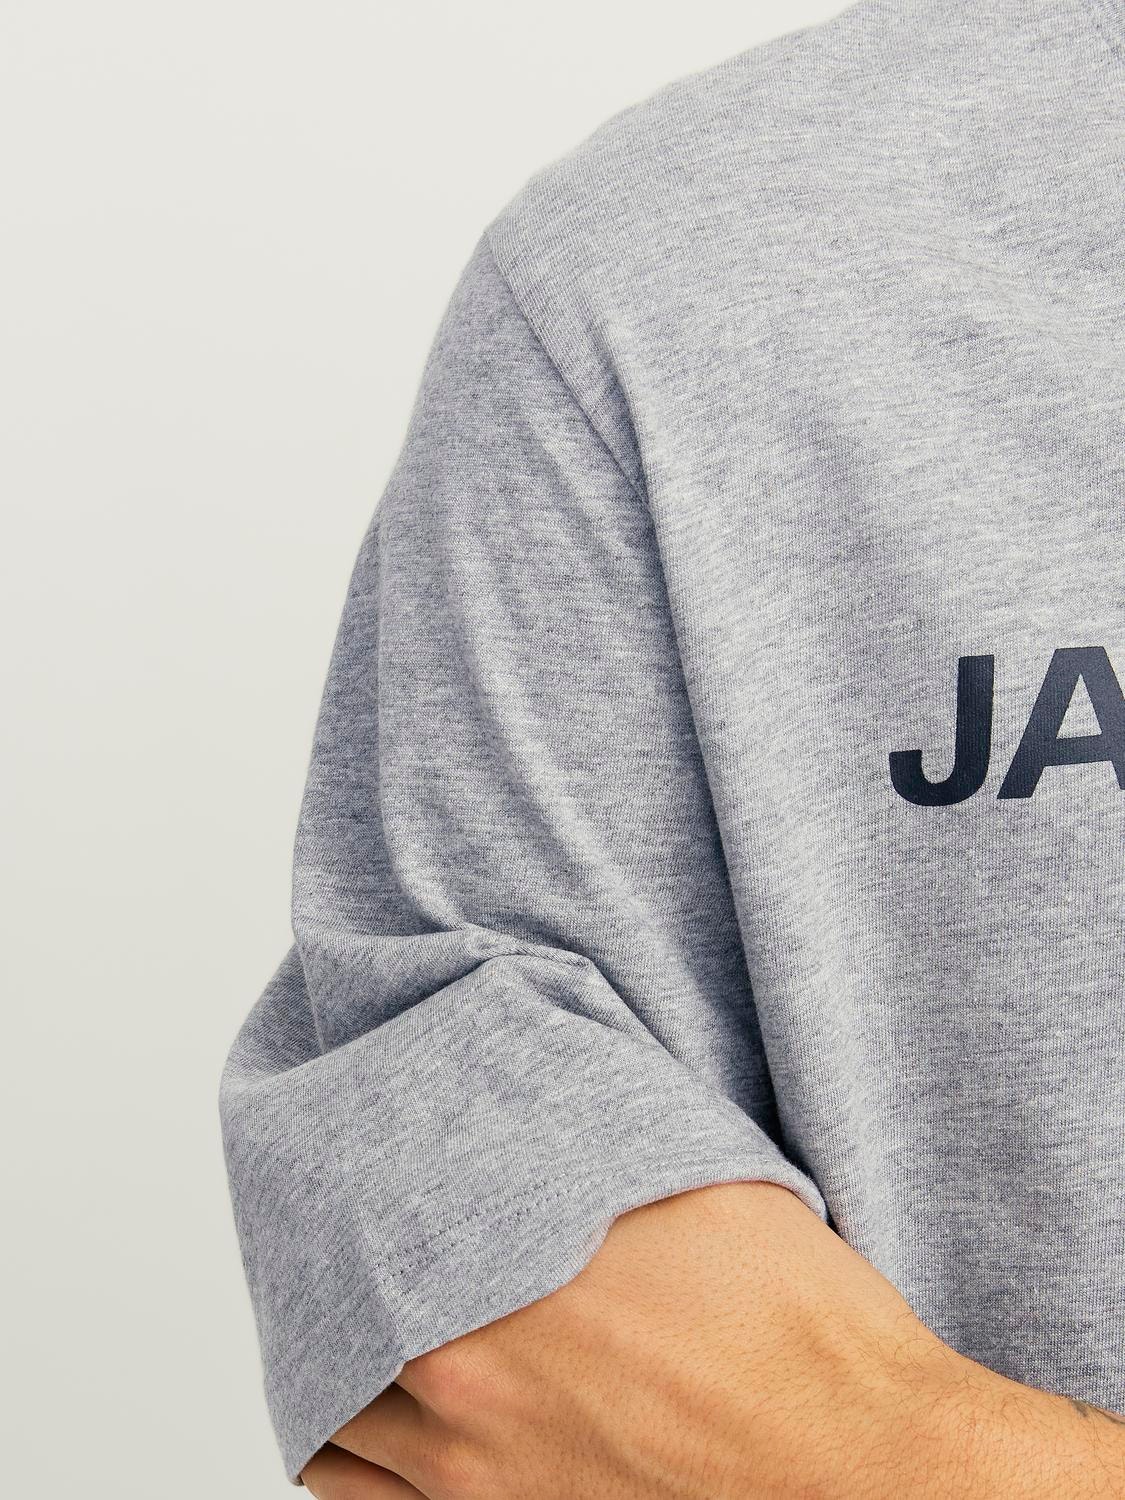 Jack & Jones Logotipas Apskritas kaklas Marškinėliai -Light Grey Melange - 12137126